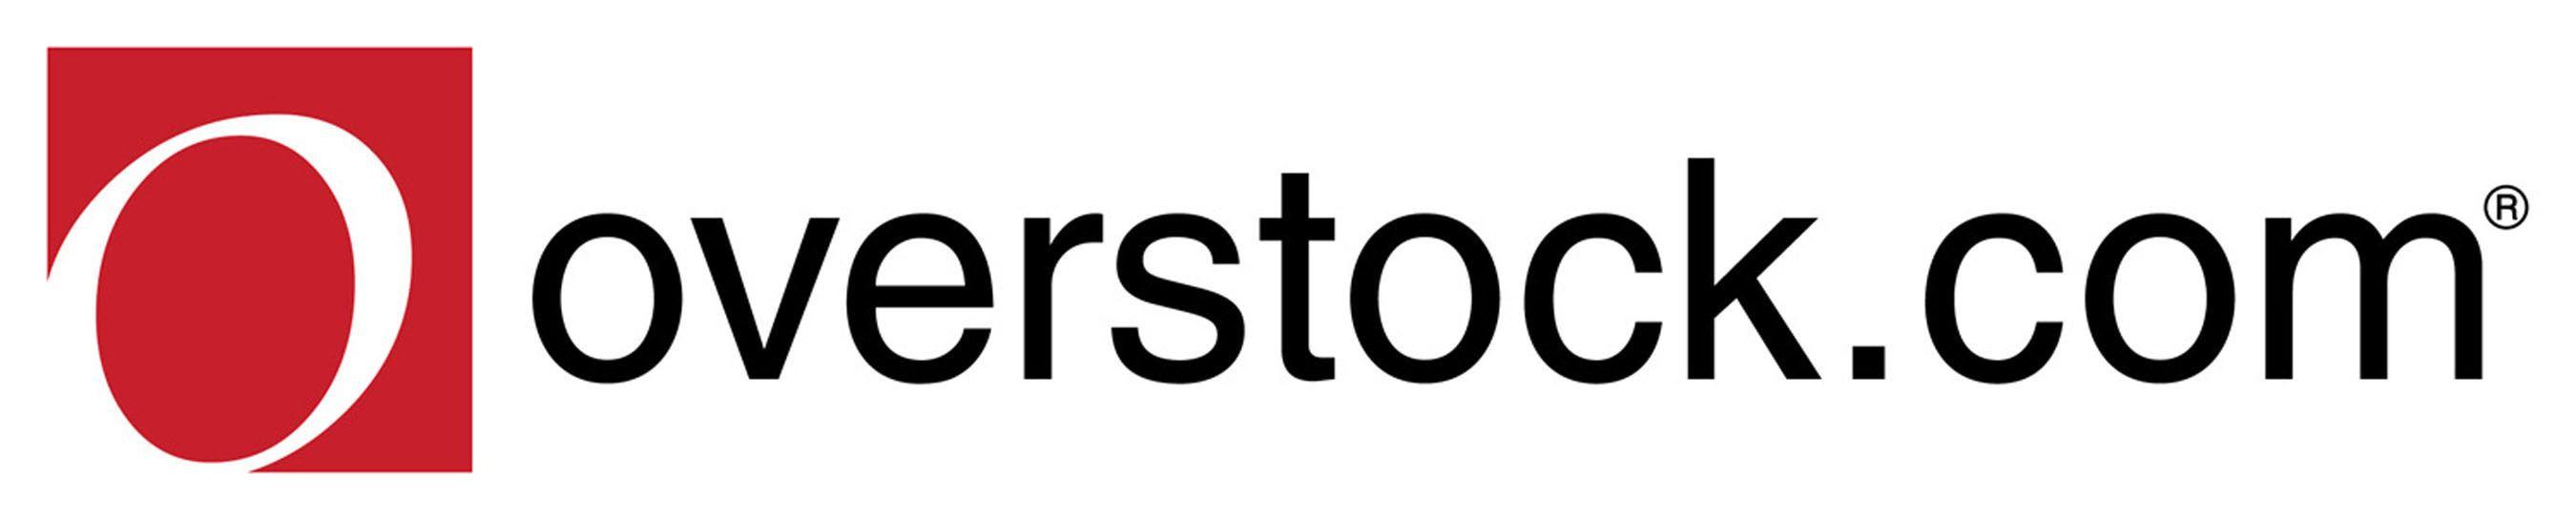 Overstock Logo - Overstock